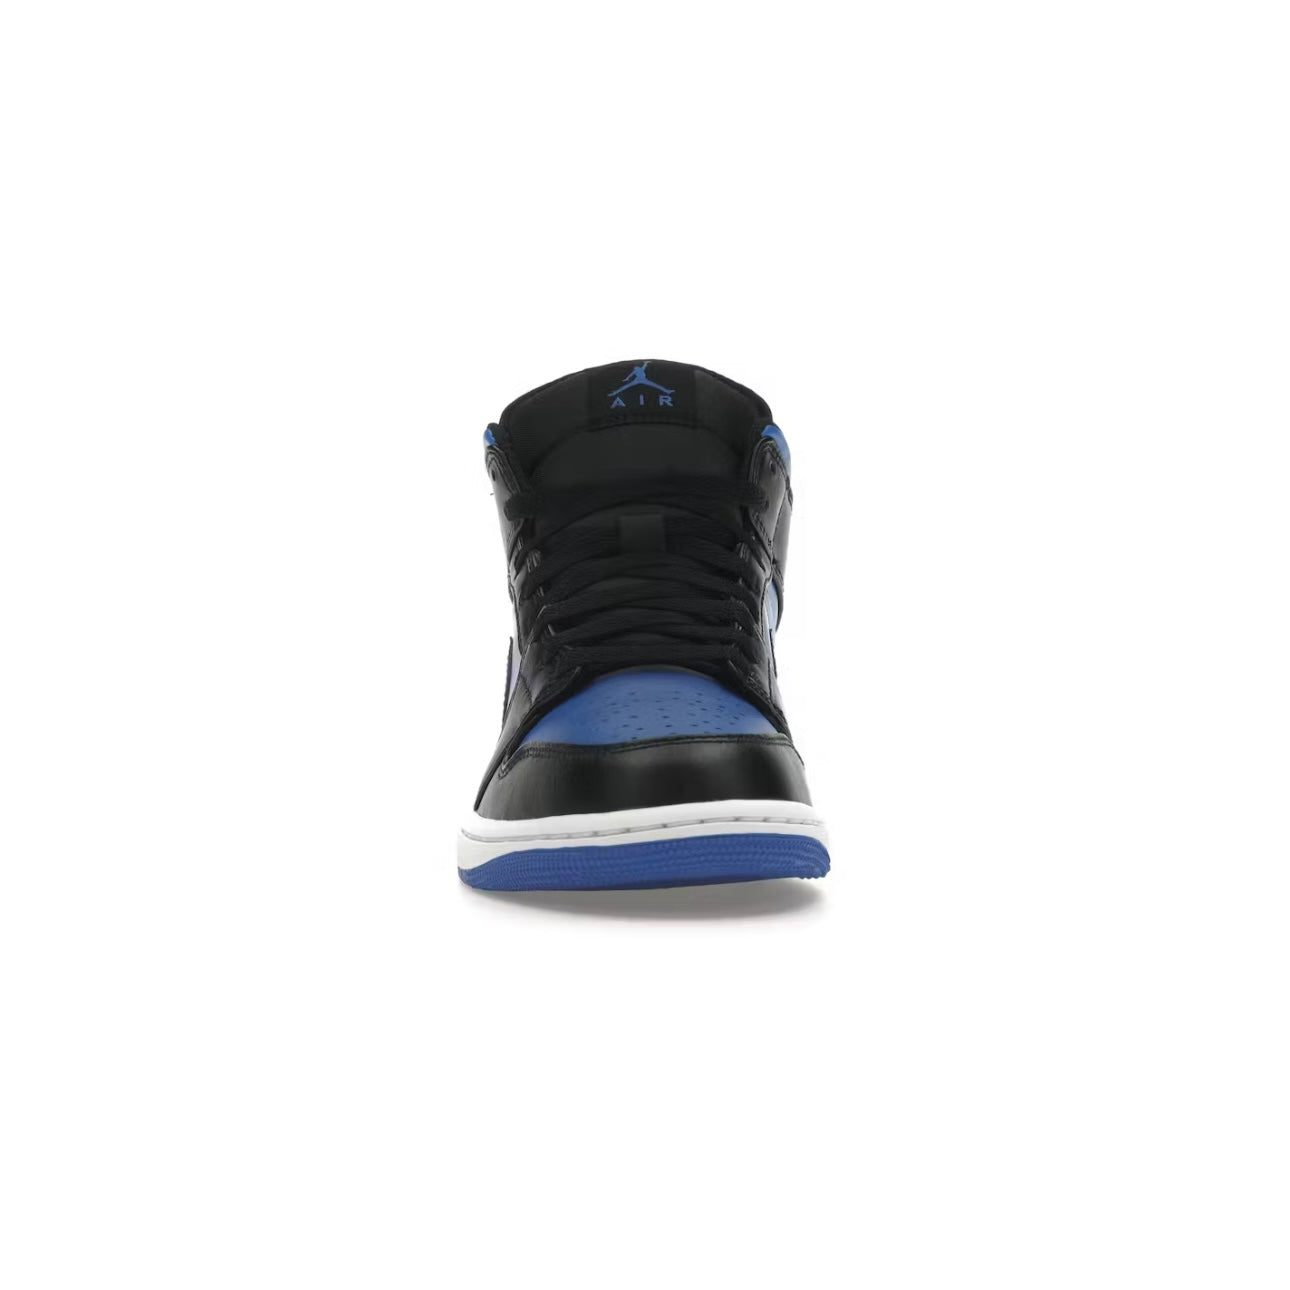 Air Jordan 1 Mid blue - PENGUIN SHOES Penguin Shoes